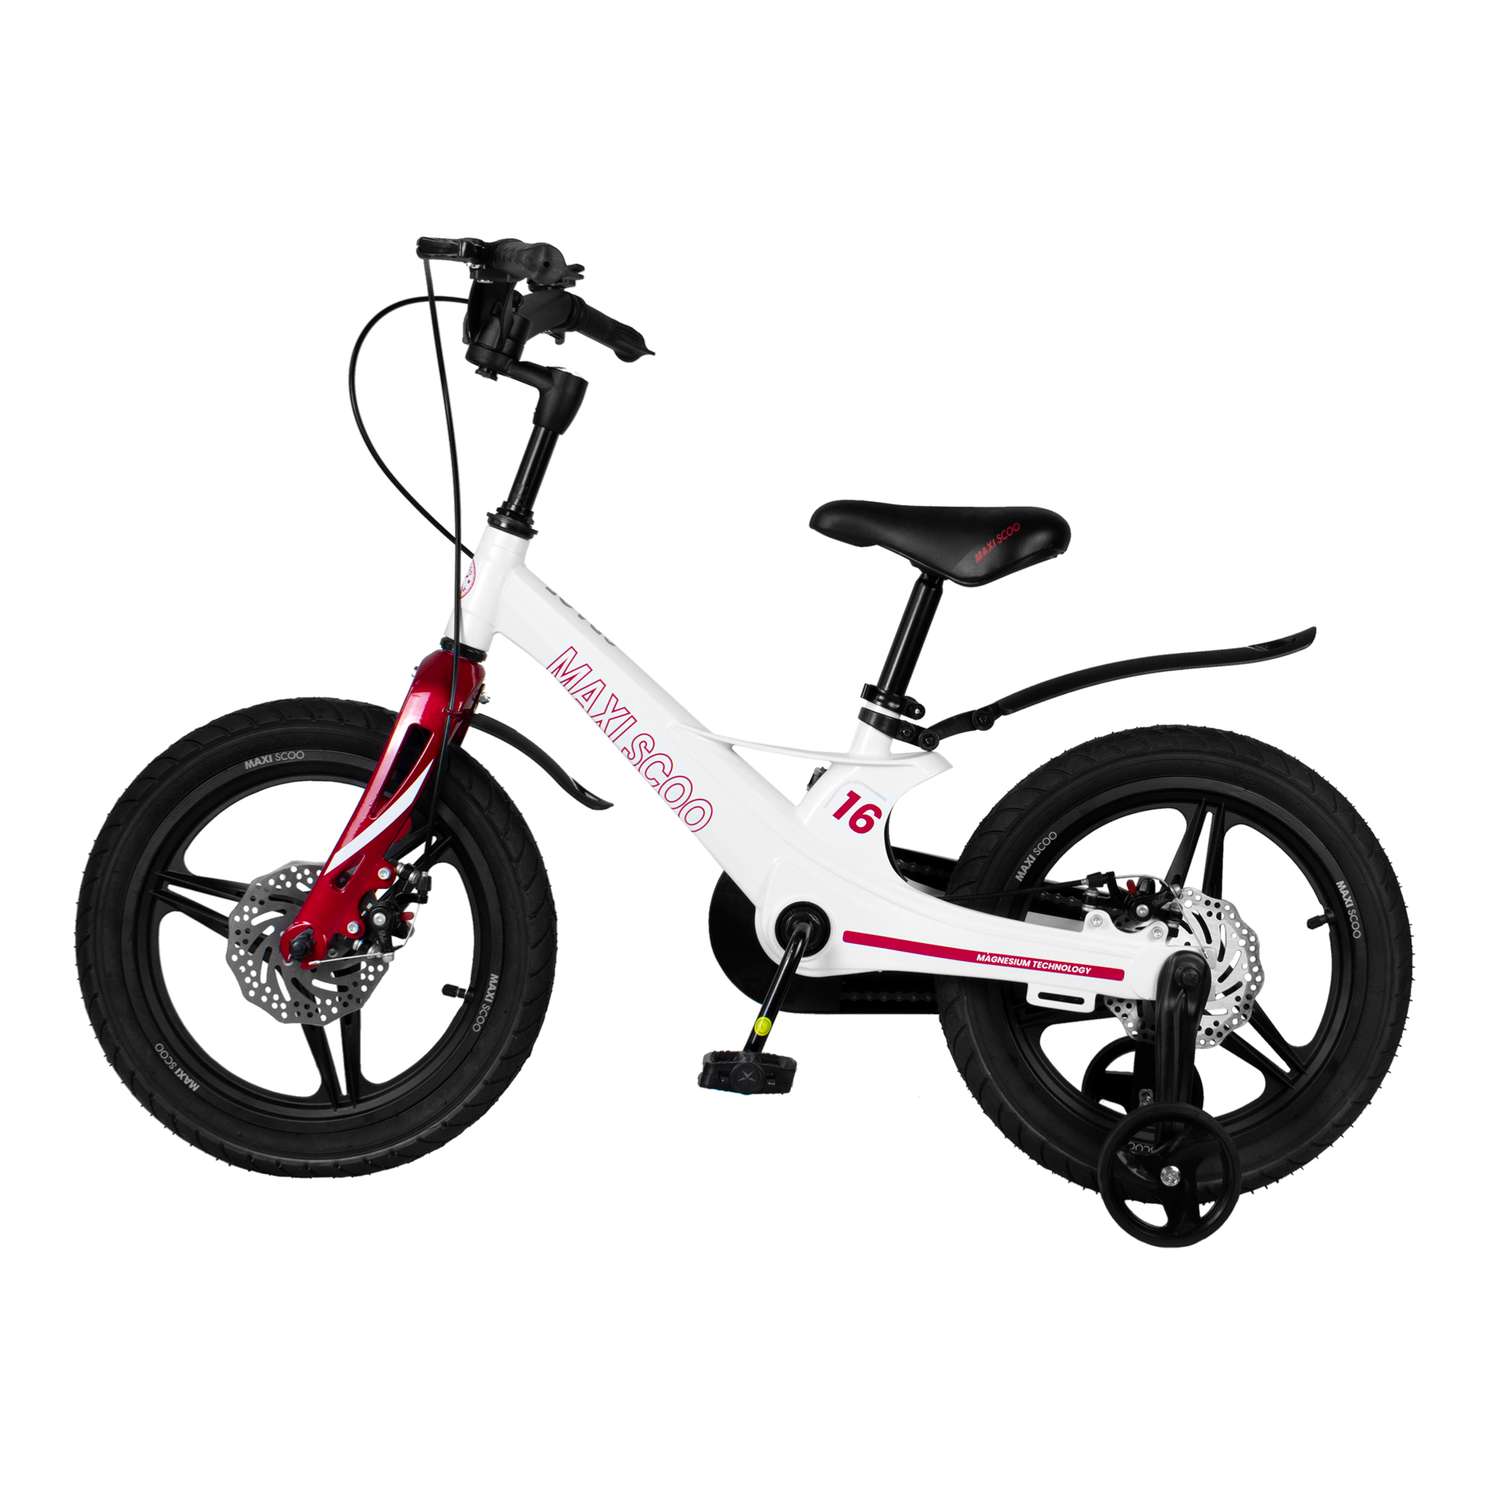 Детский двухколесный велосипед Maxiscoo Space делюкс 16 белый жемчуг - фото 3